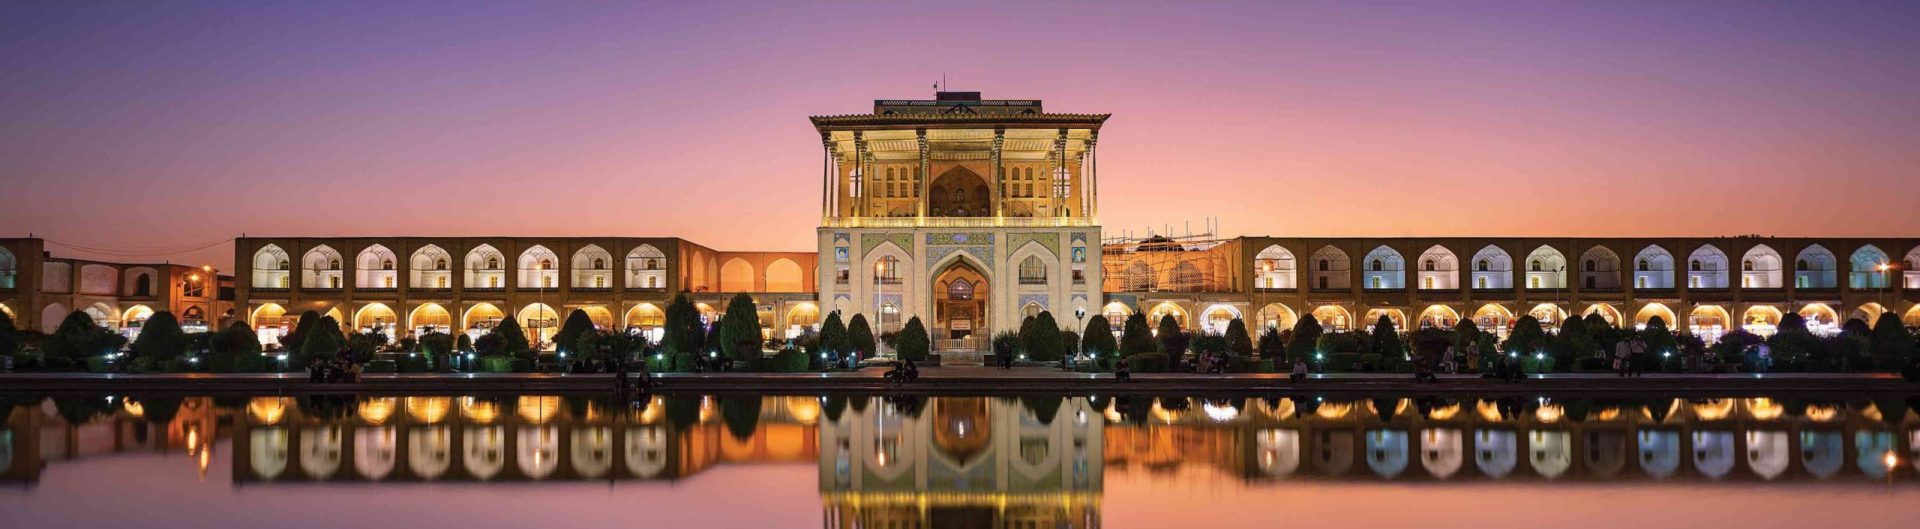 نمایی از مجموعه عالی قاپو از جاهای دیدنی اصفهان